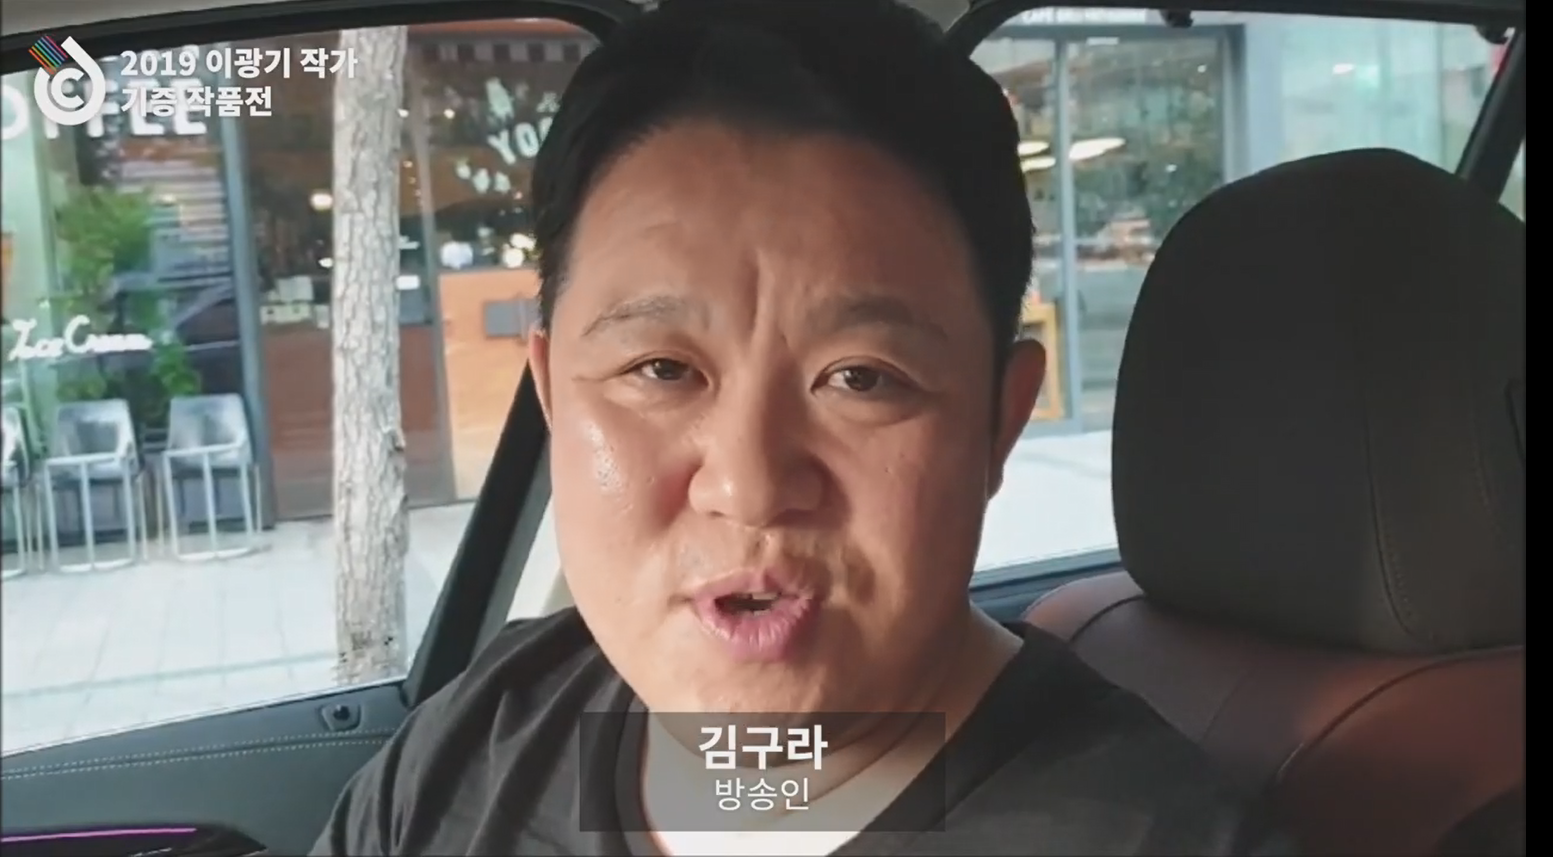 이광기 작가 기증작품전 축하영상 공개! 썸네일 이미지